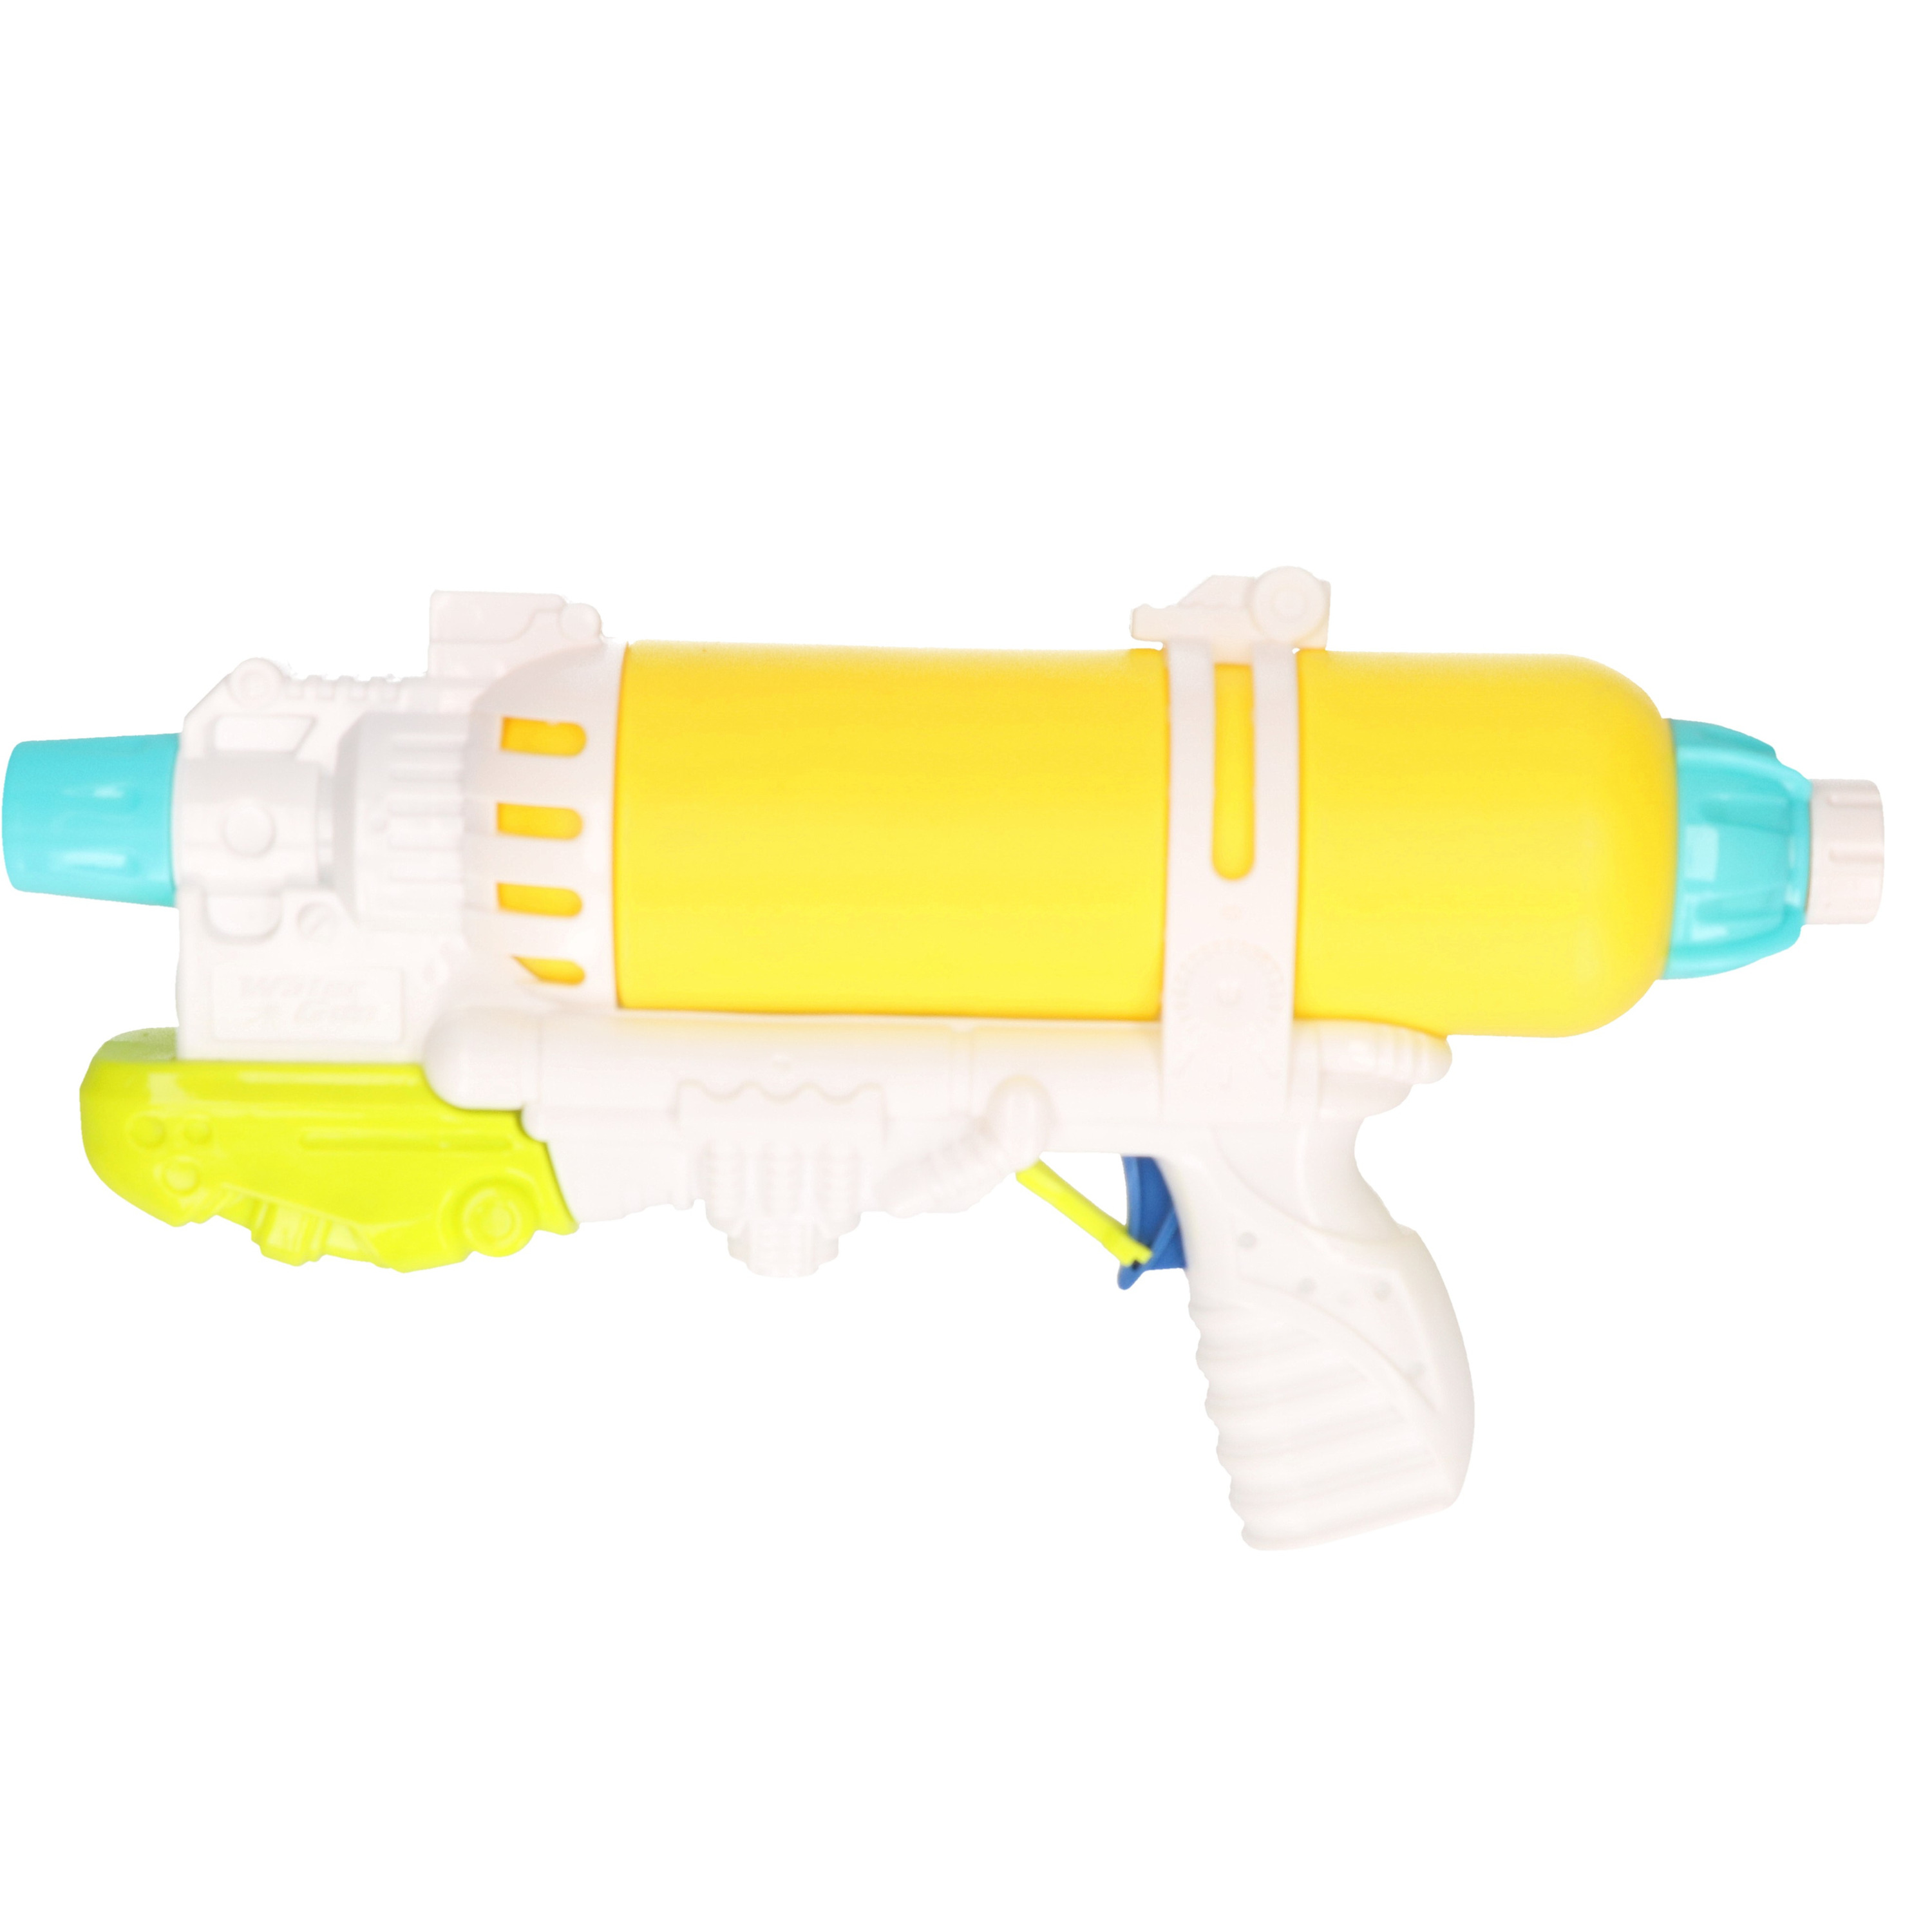 1x Waterpistolen-waterpistool geel-wit van 34 cm kinderspeelgoed